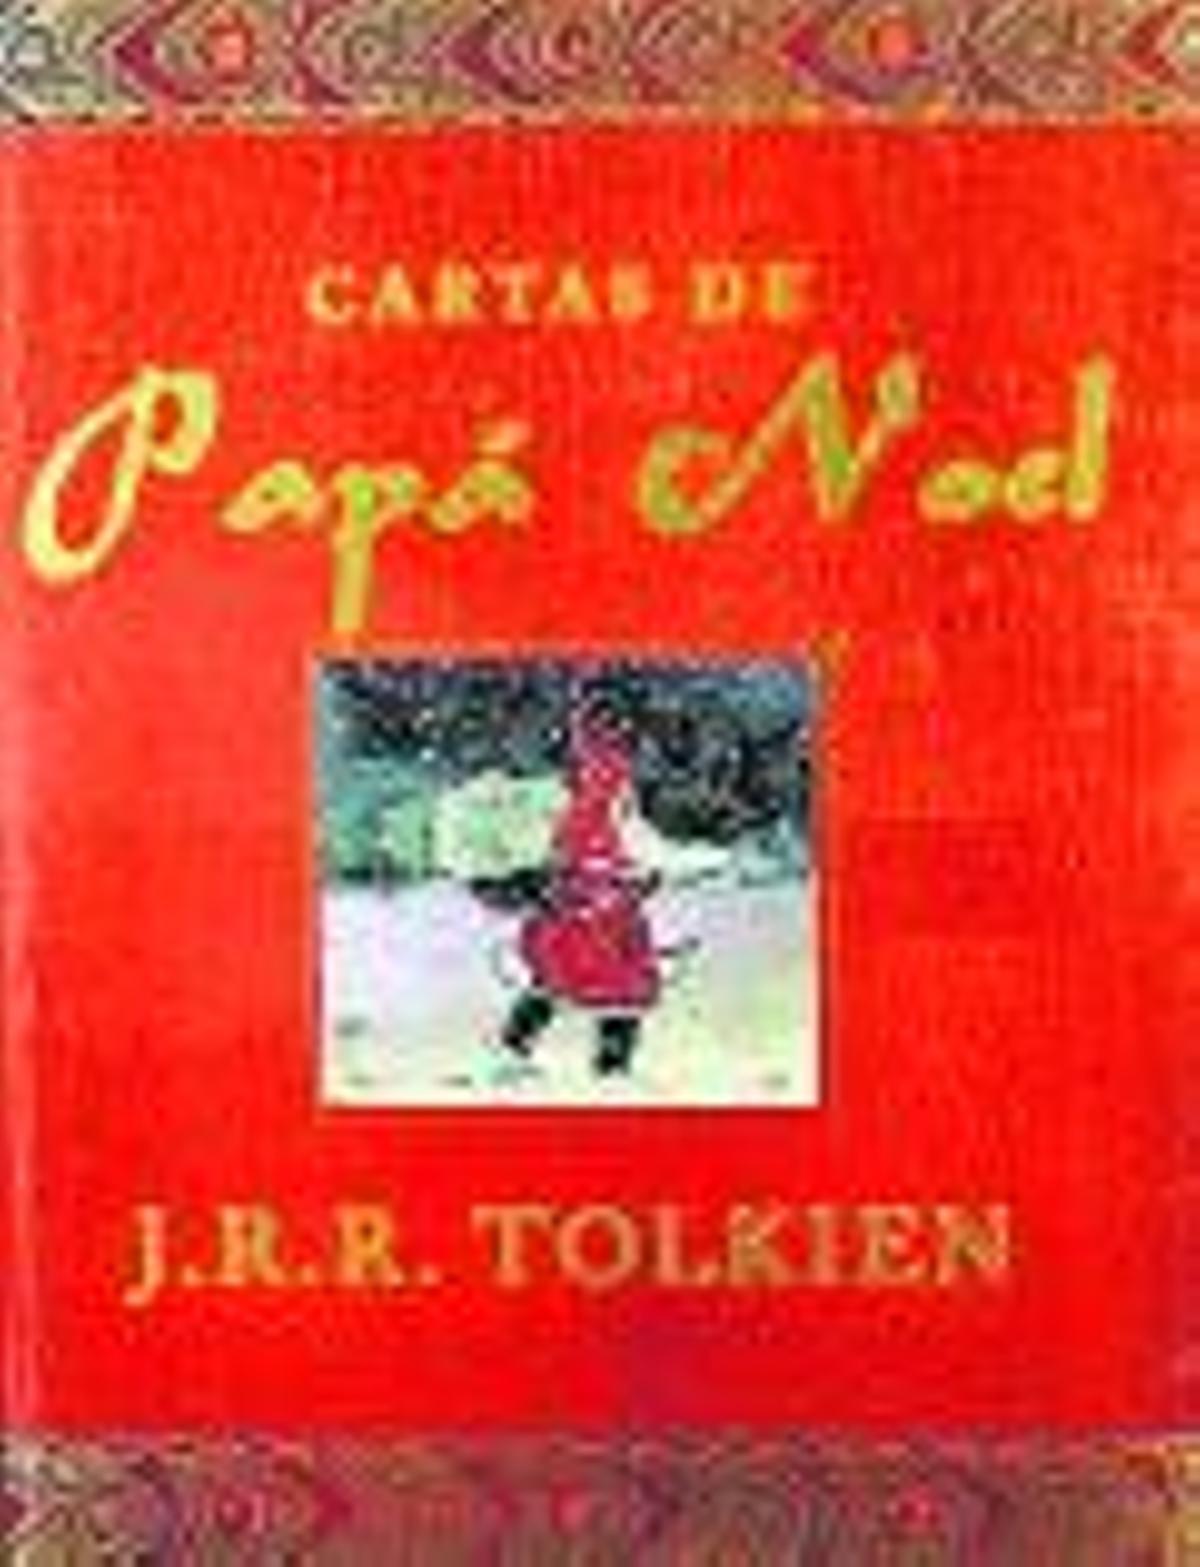 J.R.R. TOLKIEN. Cartes del Pare Noel. Empúries, 112 pàgines, 10 €.